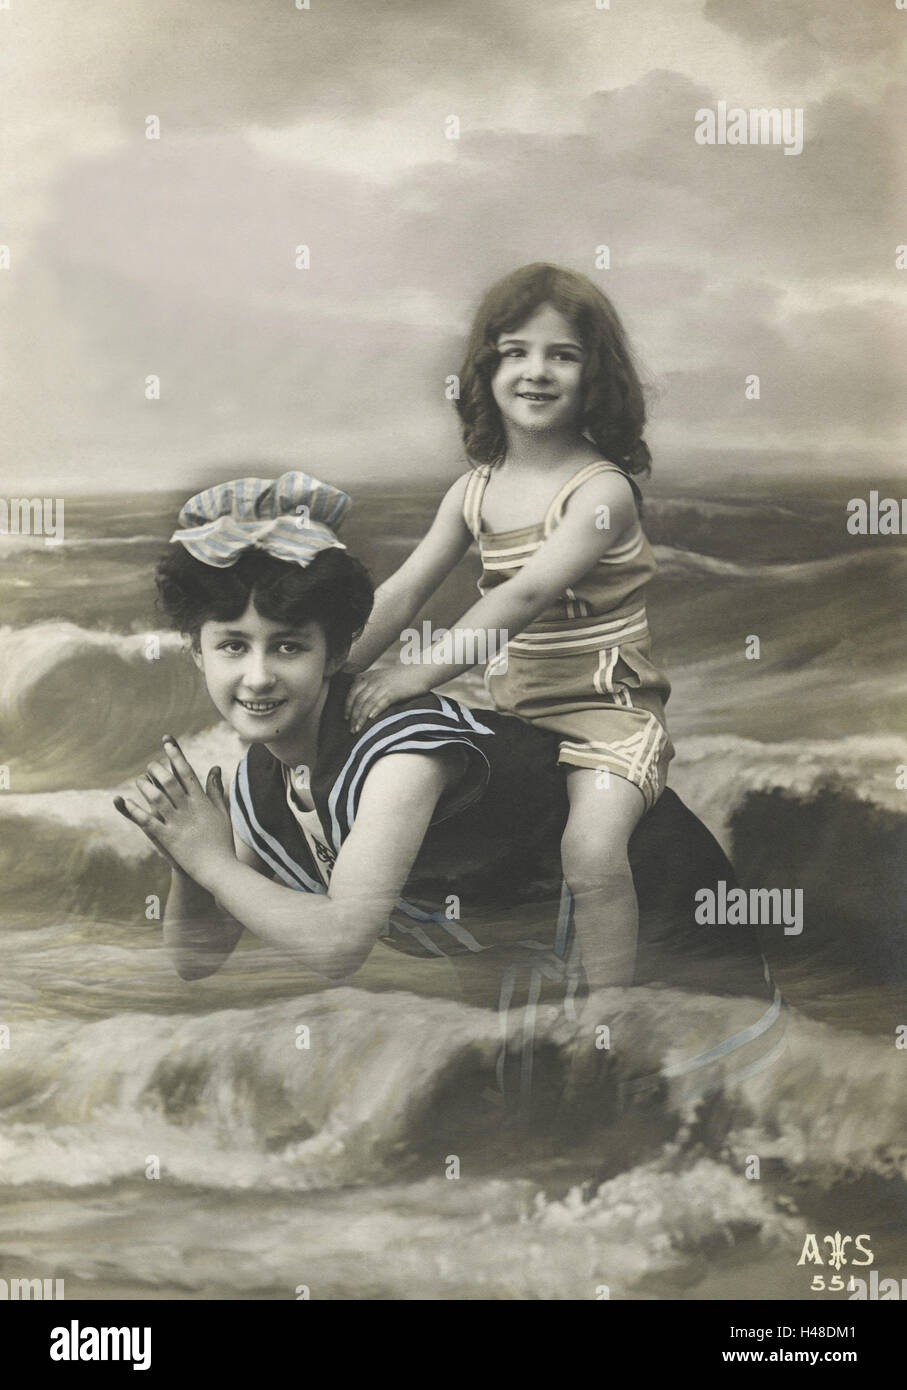 Nostalgia, woman, child, sea, waves, swimming, b/w colored, postcard, nostalgic, Stock Photo